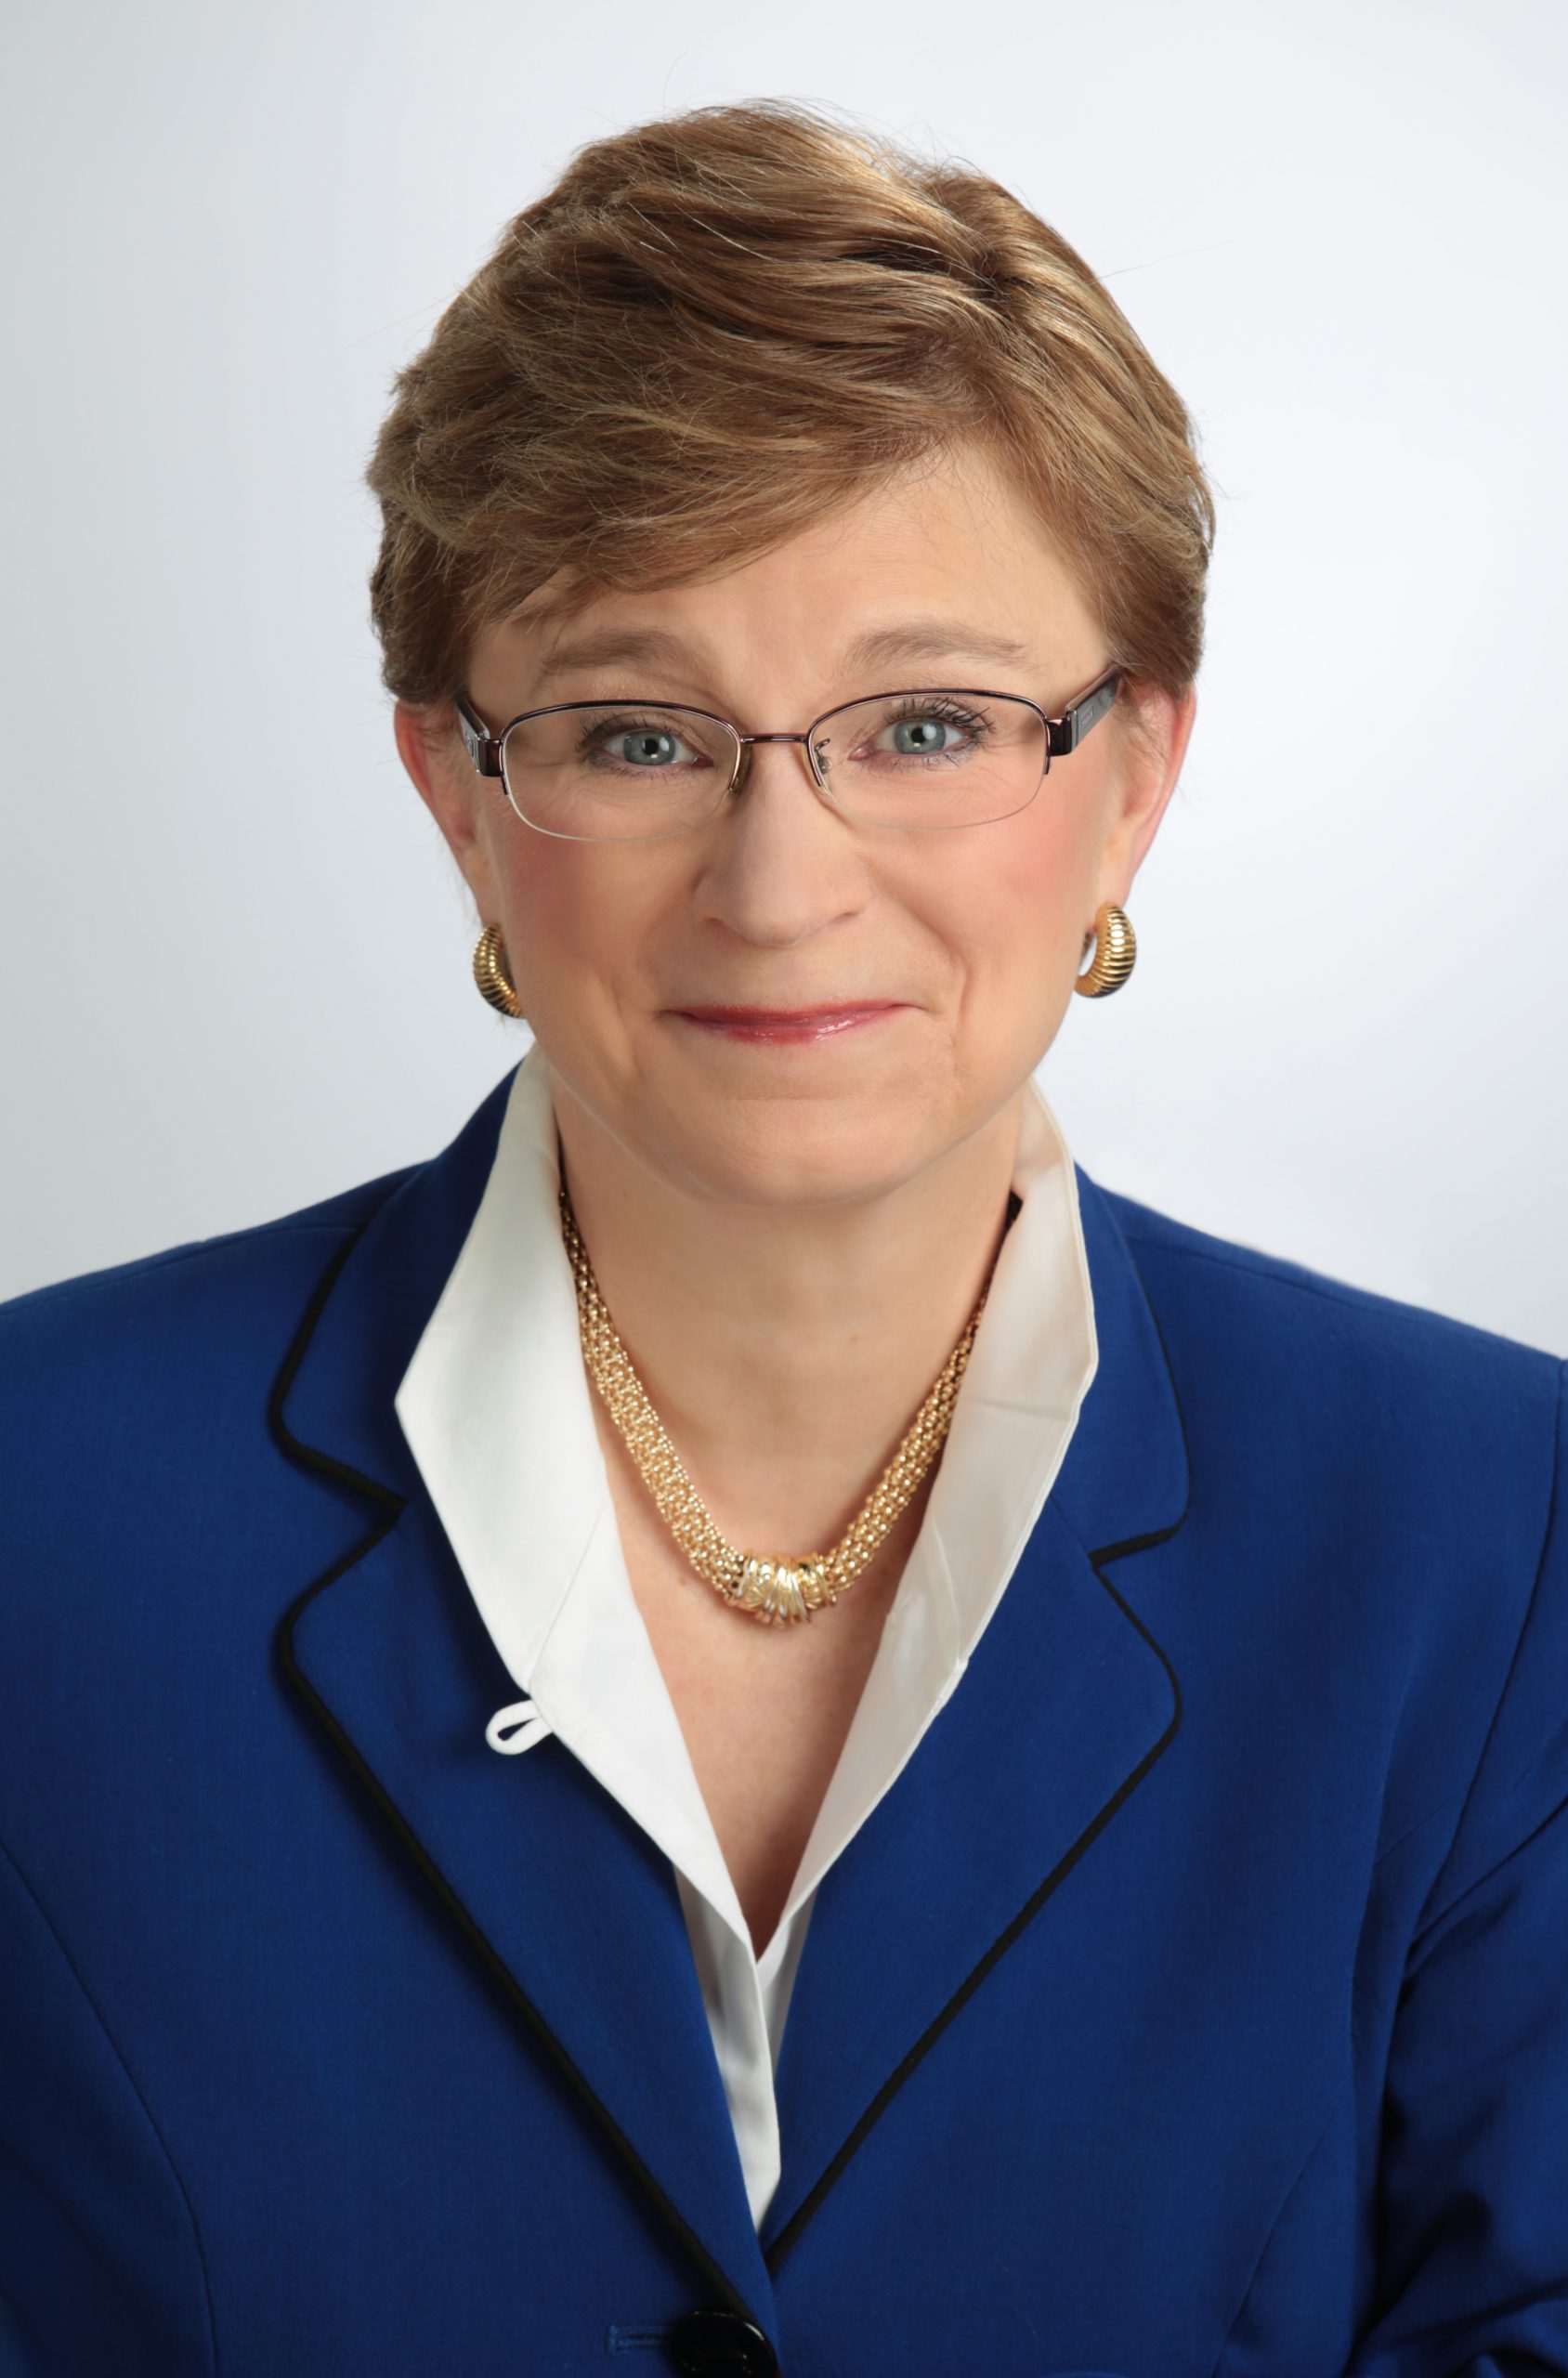 Lorraine M. Martin